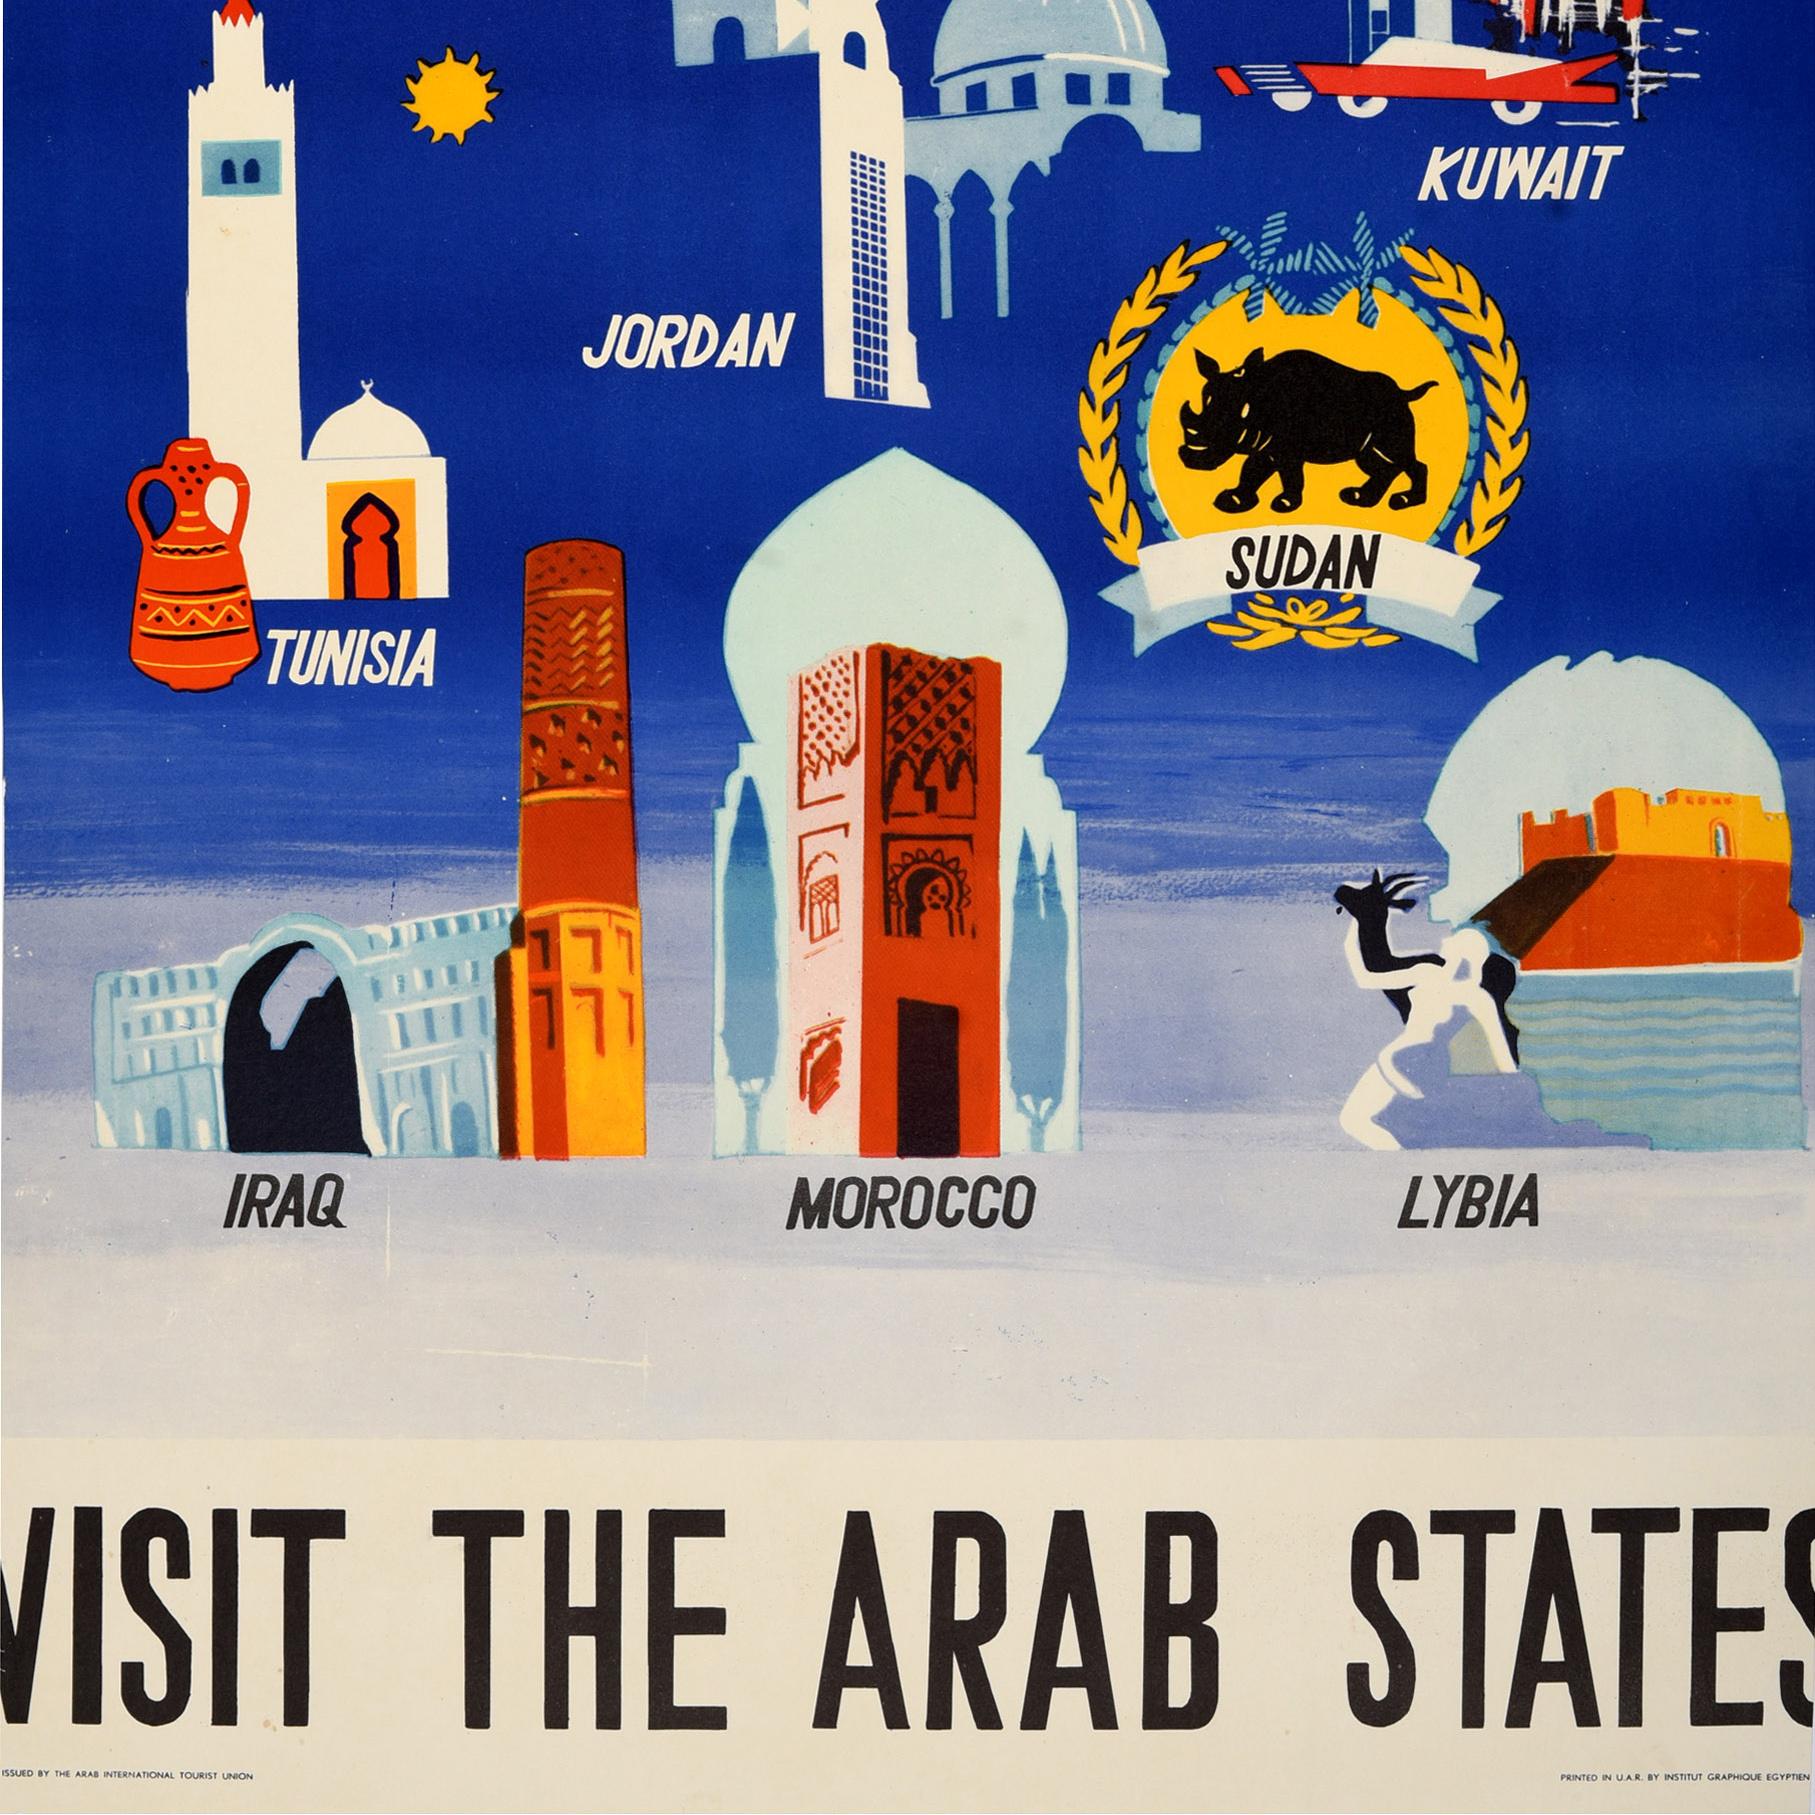 Original Vintage Travel Poster Visit The Arab States Africa Middle East Design For Sale 1